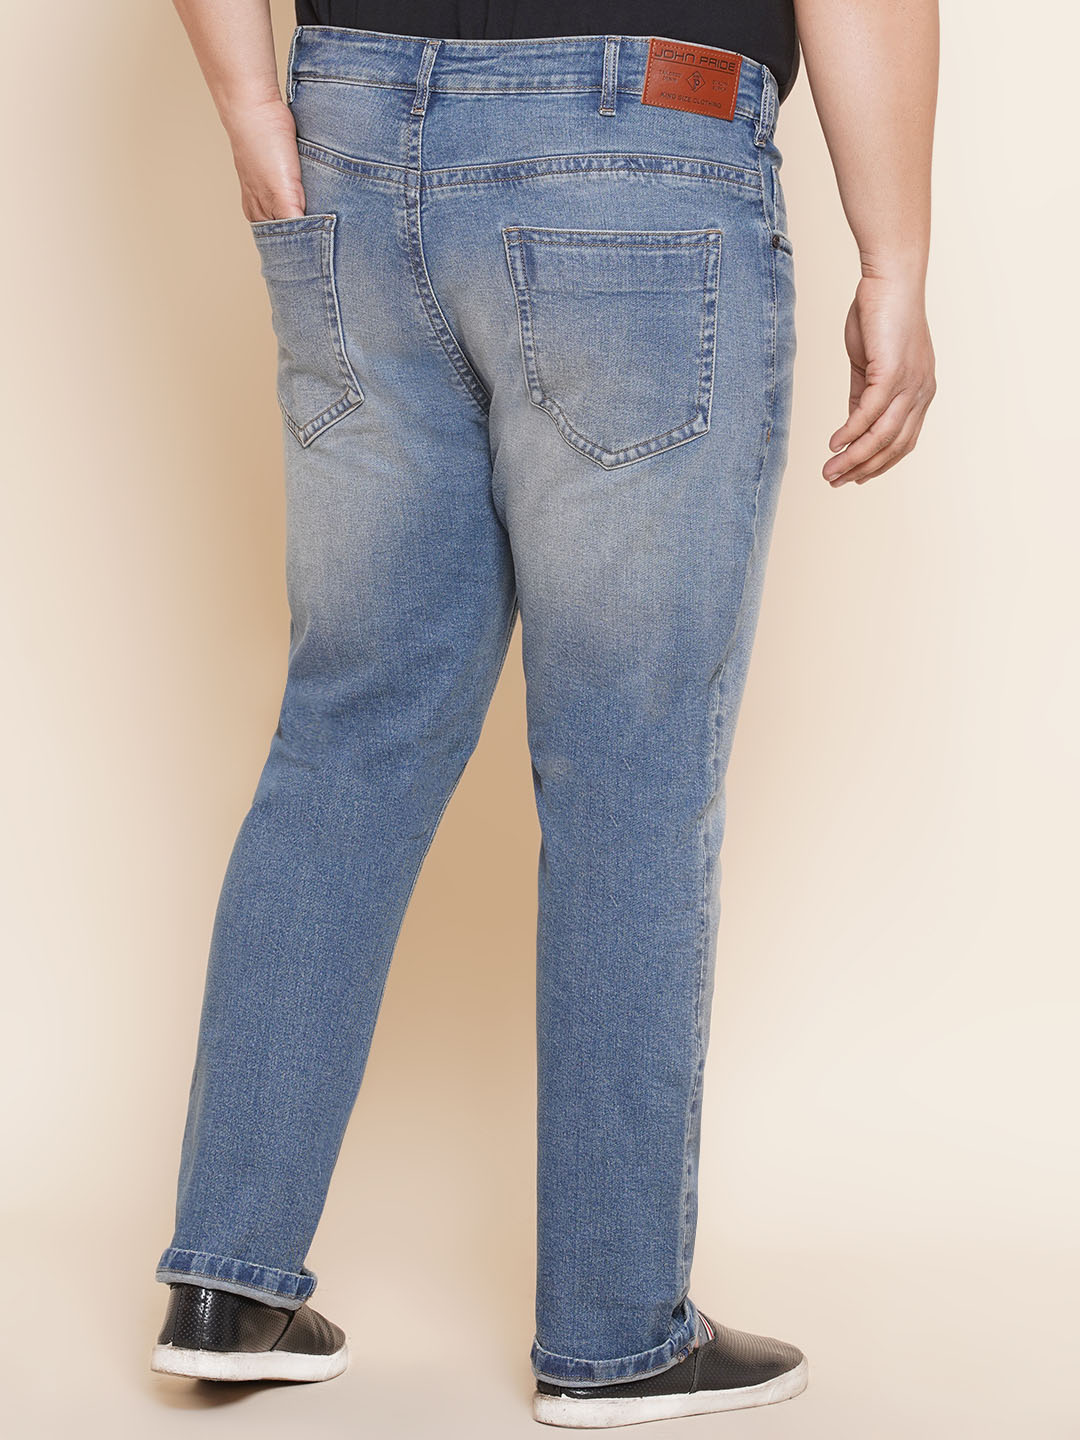 bottomwear/jeans/JPJ12296/jpj12296-5.jpg